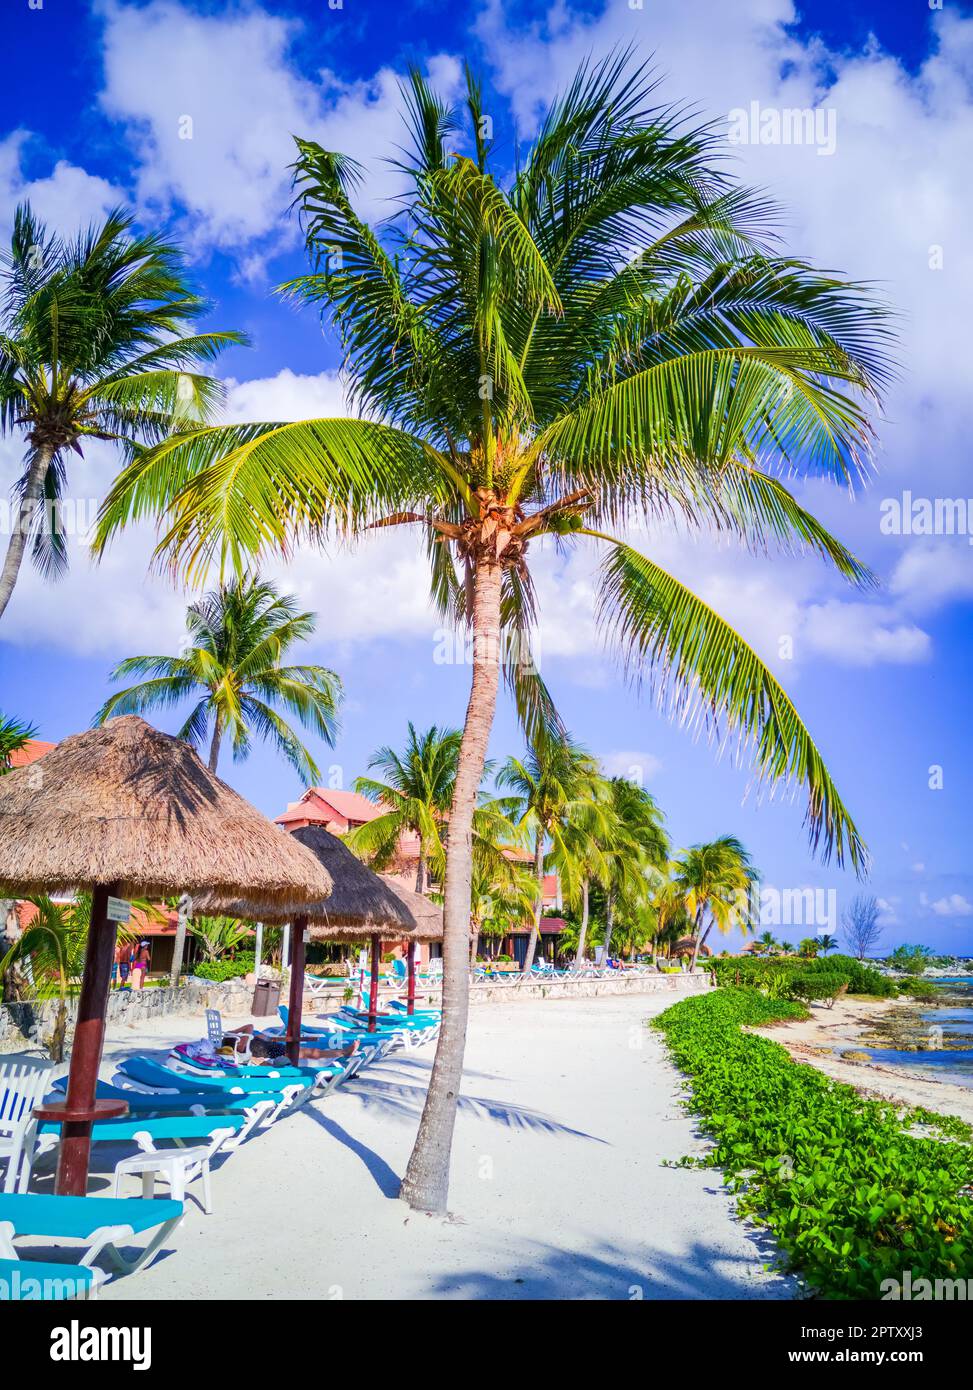 Puerto Aventuras, Messico. Piccola cittadina di villeggiatura situata nella Riviera Maya, conosciuta per le sue splendide spiagge e il suo porticciolo, Cancun. Foto Stock